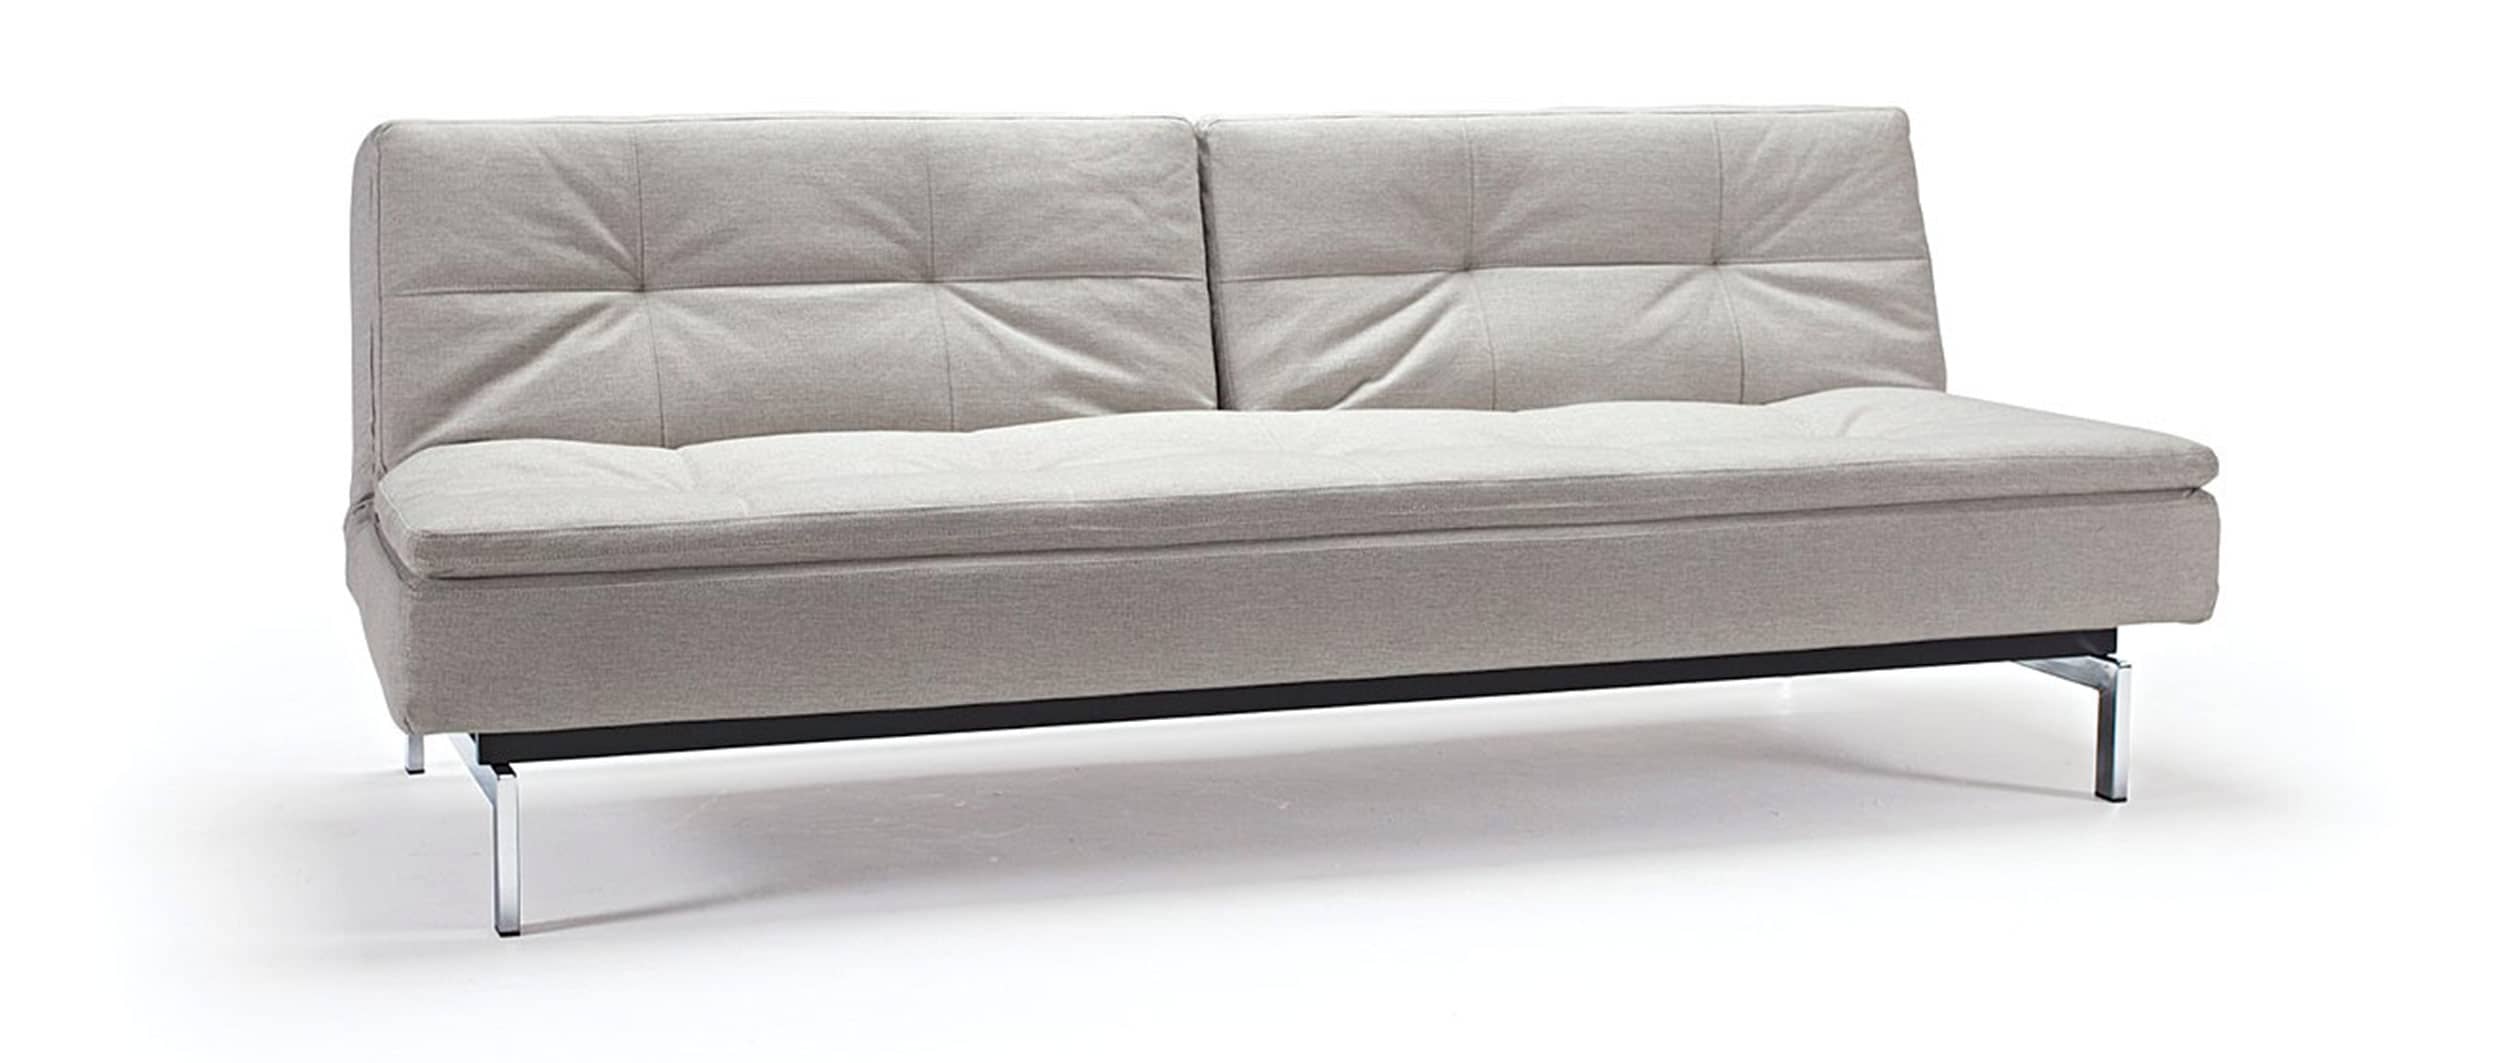 Innovation Schlafsofa DUBLEXO mit Chromfüßen und ohne Armlehnen, Gästebett mit verstellbarer Rückenlehne, skandinavisches Design - Liegefläche 110x200